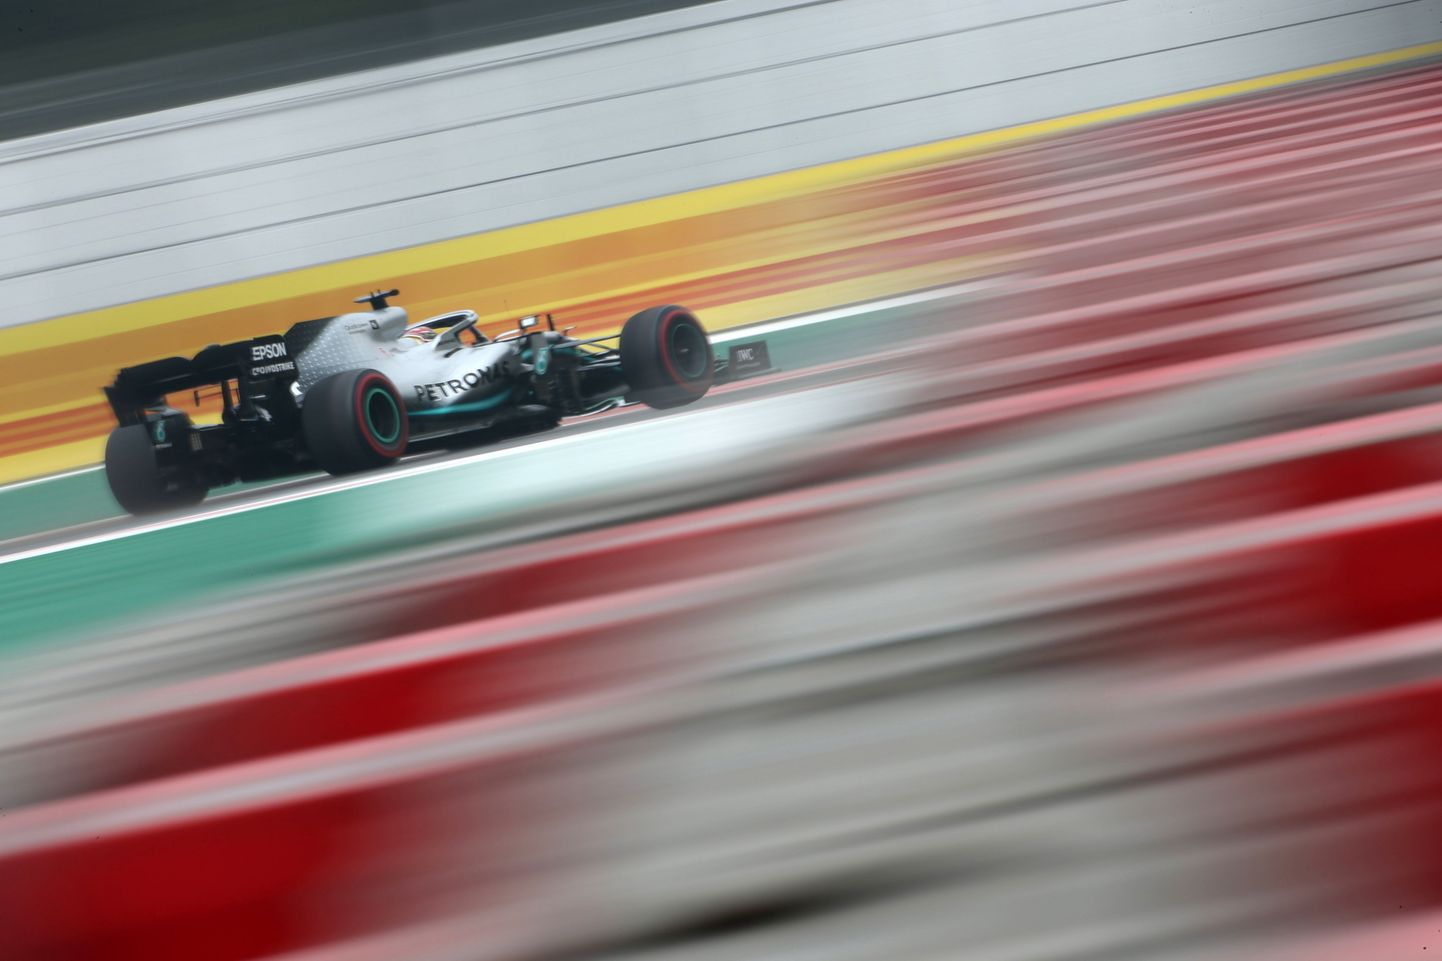 Lewis Hamiltonil on sel nädalavahetusel võimalus tõusta maailmameistriks.